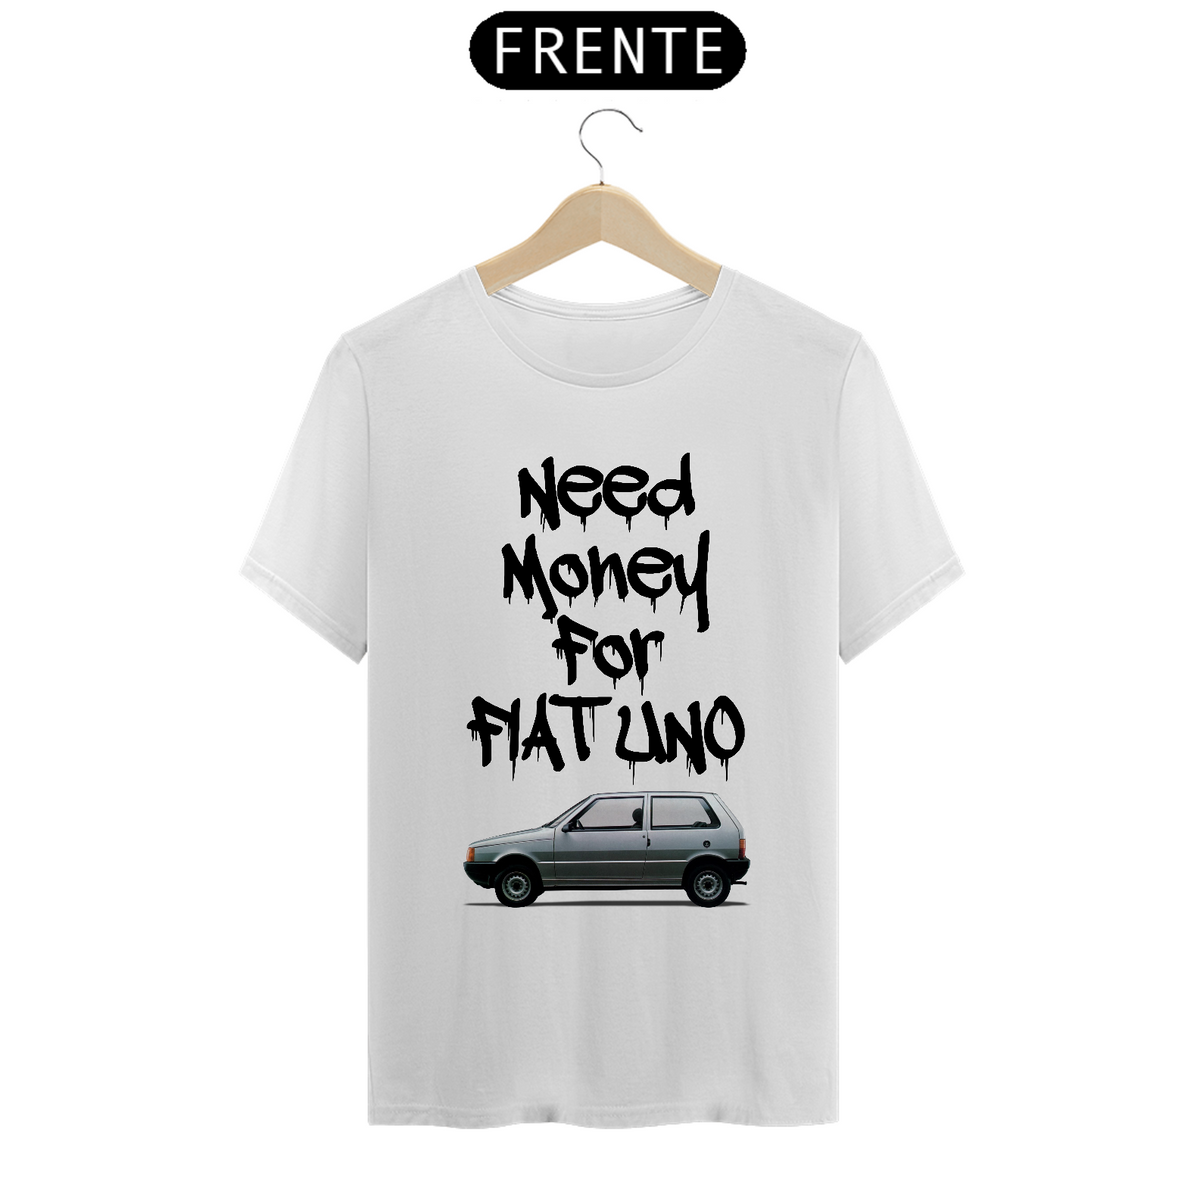 Nome do produto: Need Money For Fiat Uno